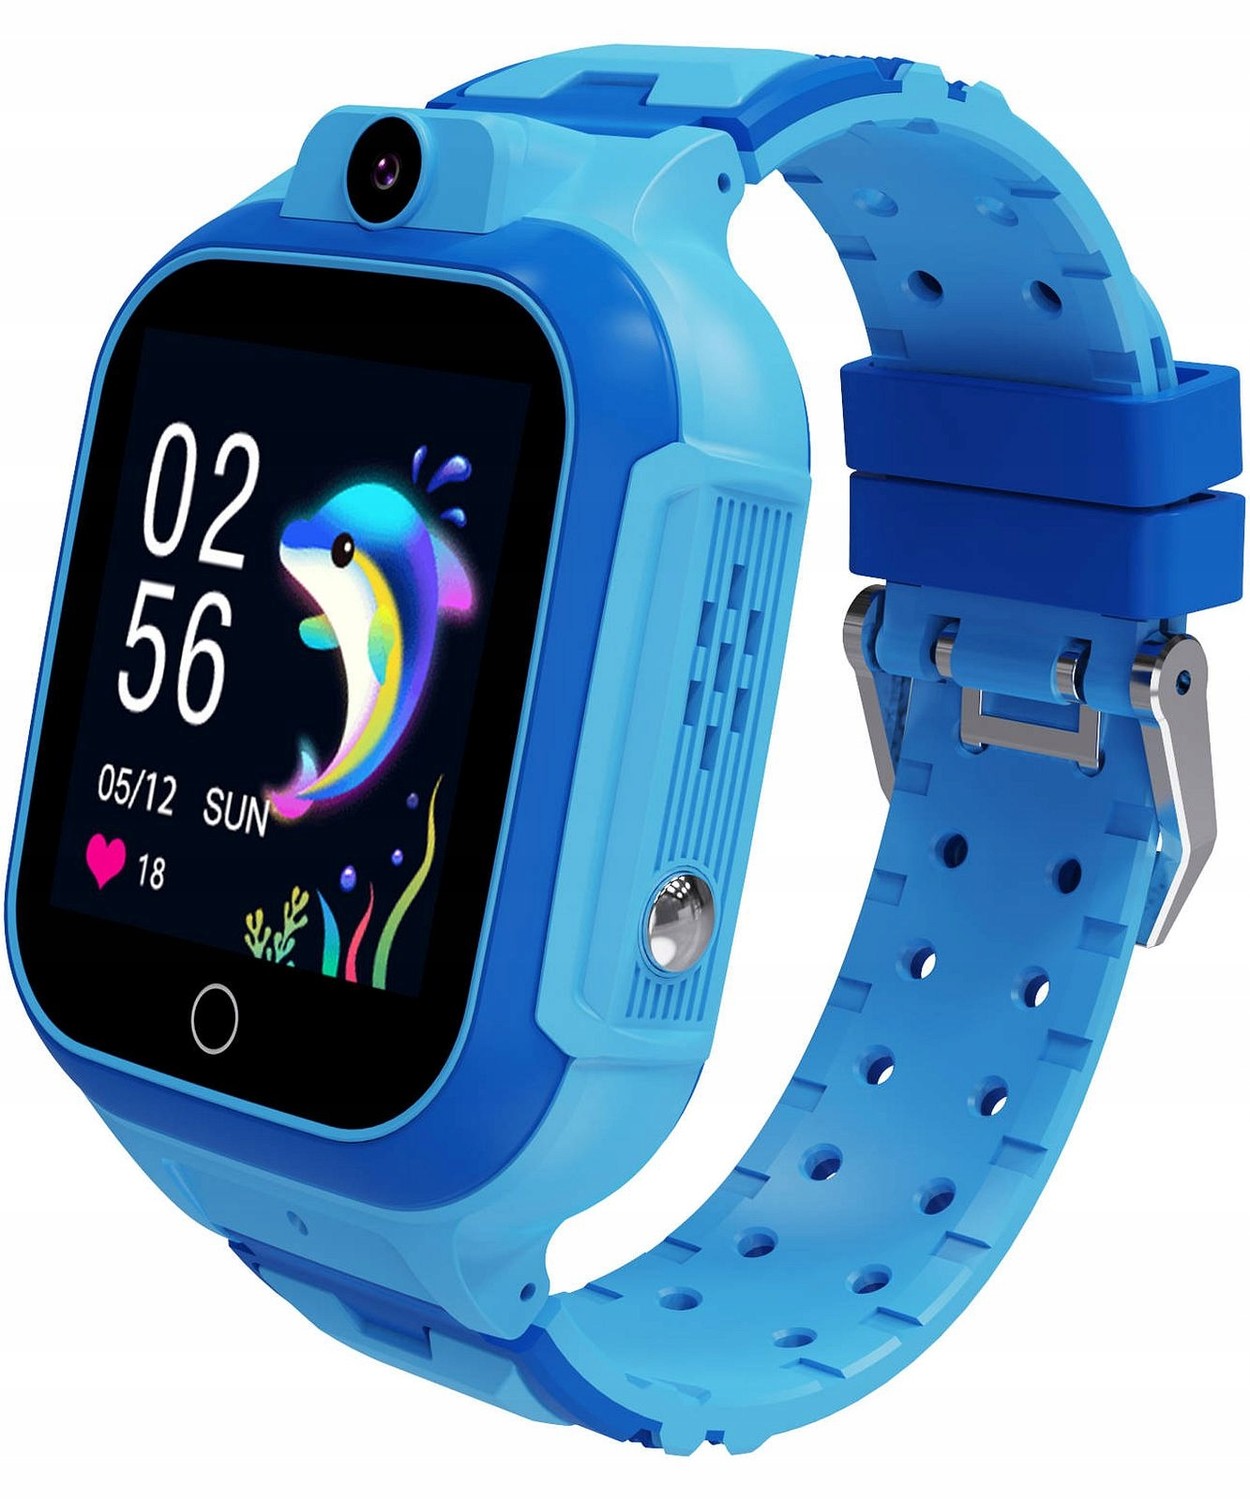 Dětské chytré hodinky Pacific 33 4G Lte Sim modré